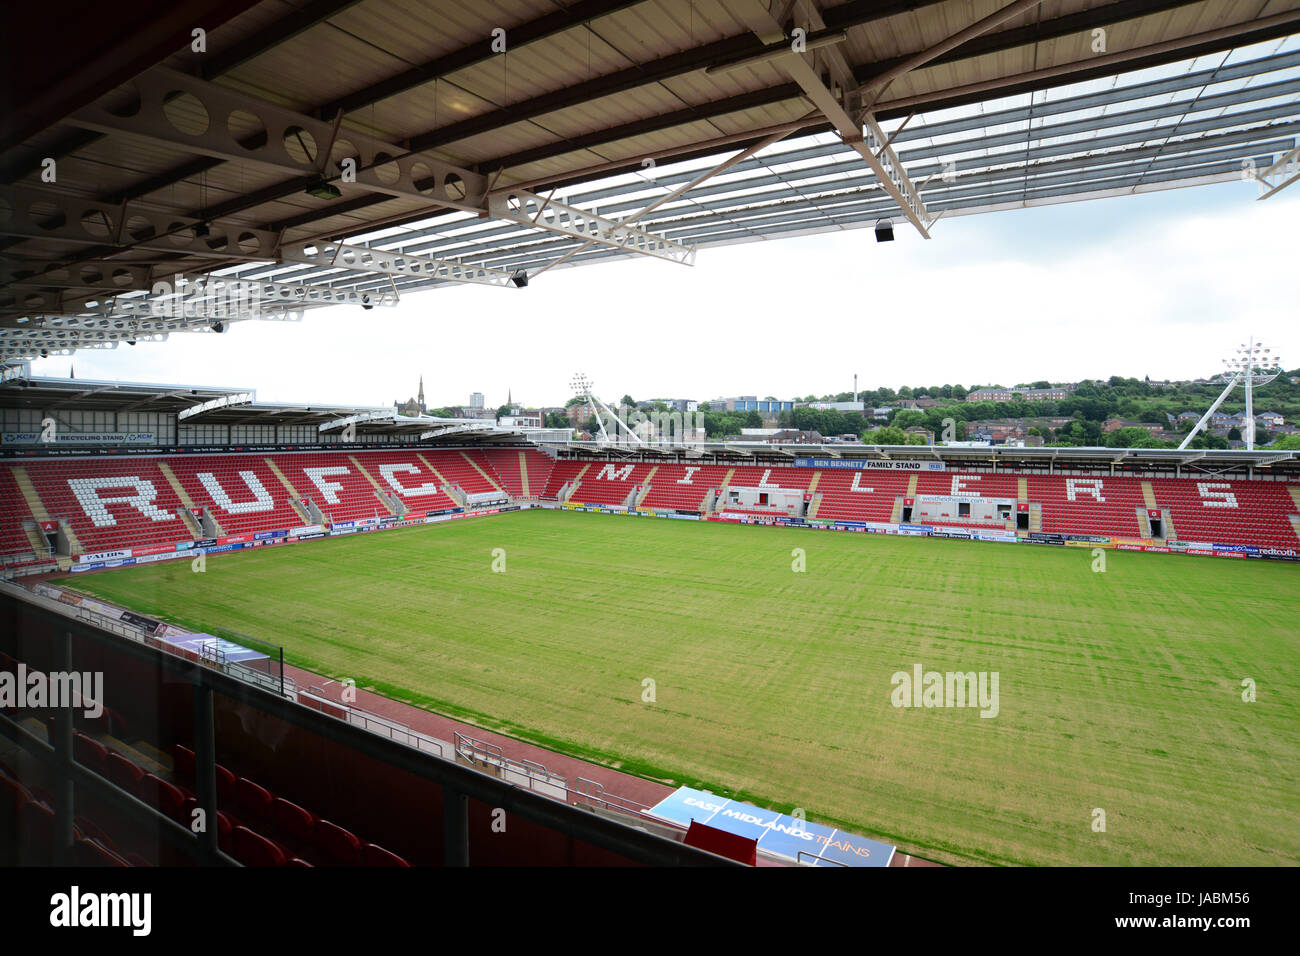 Rotherham United FC football stadium, South Yorkshire, UK. Stock Photo